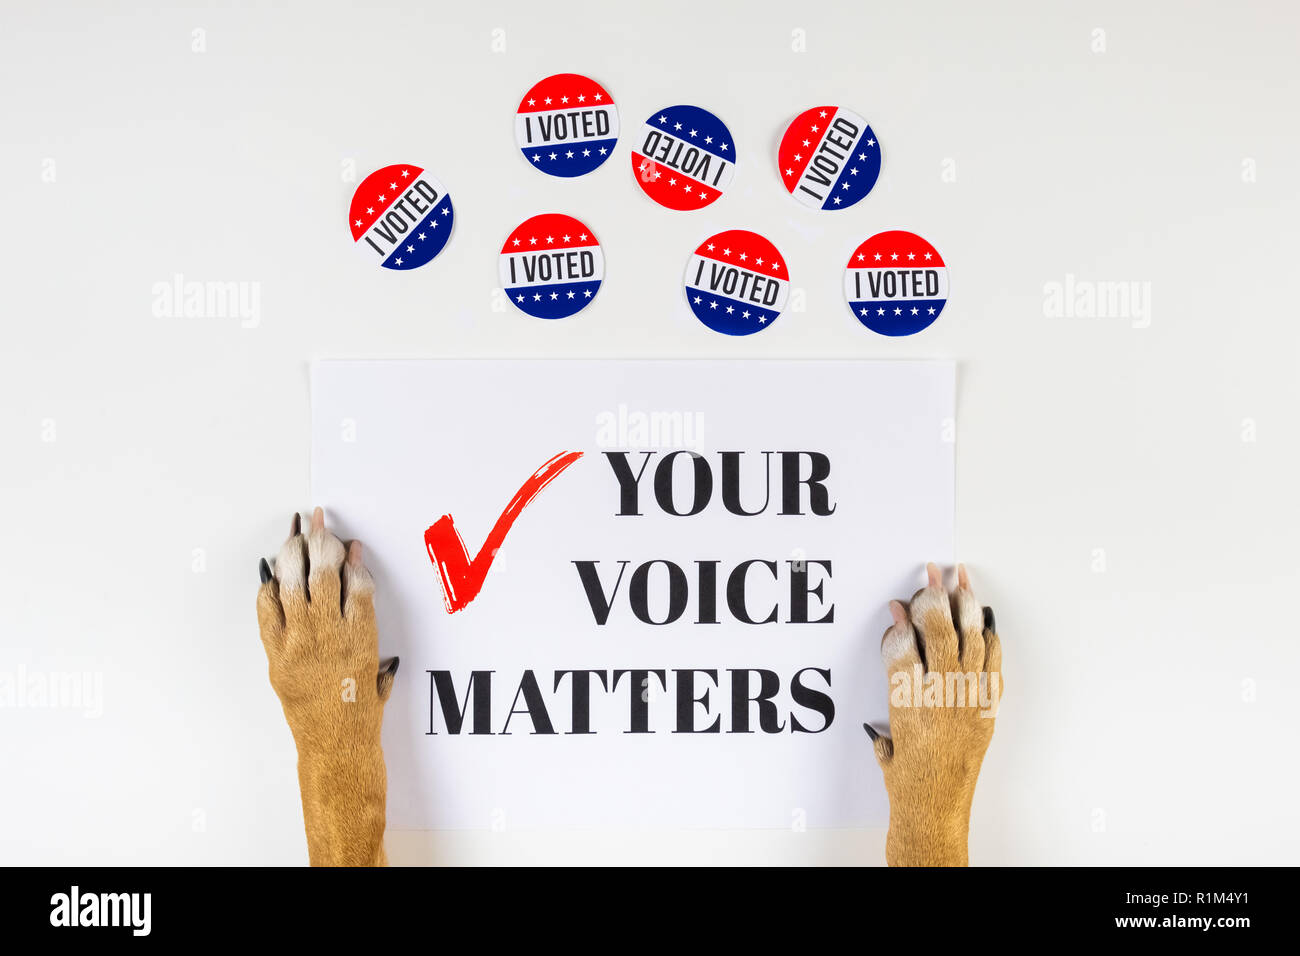 Elezioni americane attivismo concetto con zampe di cane. Vista superiore del segno politico e votare i badge di giorno su sfondo bianco Foto Stock